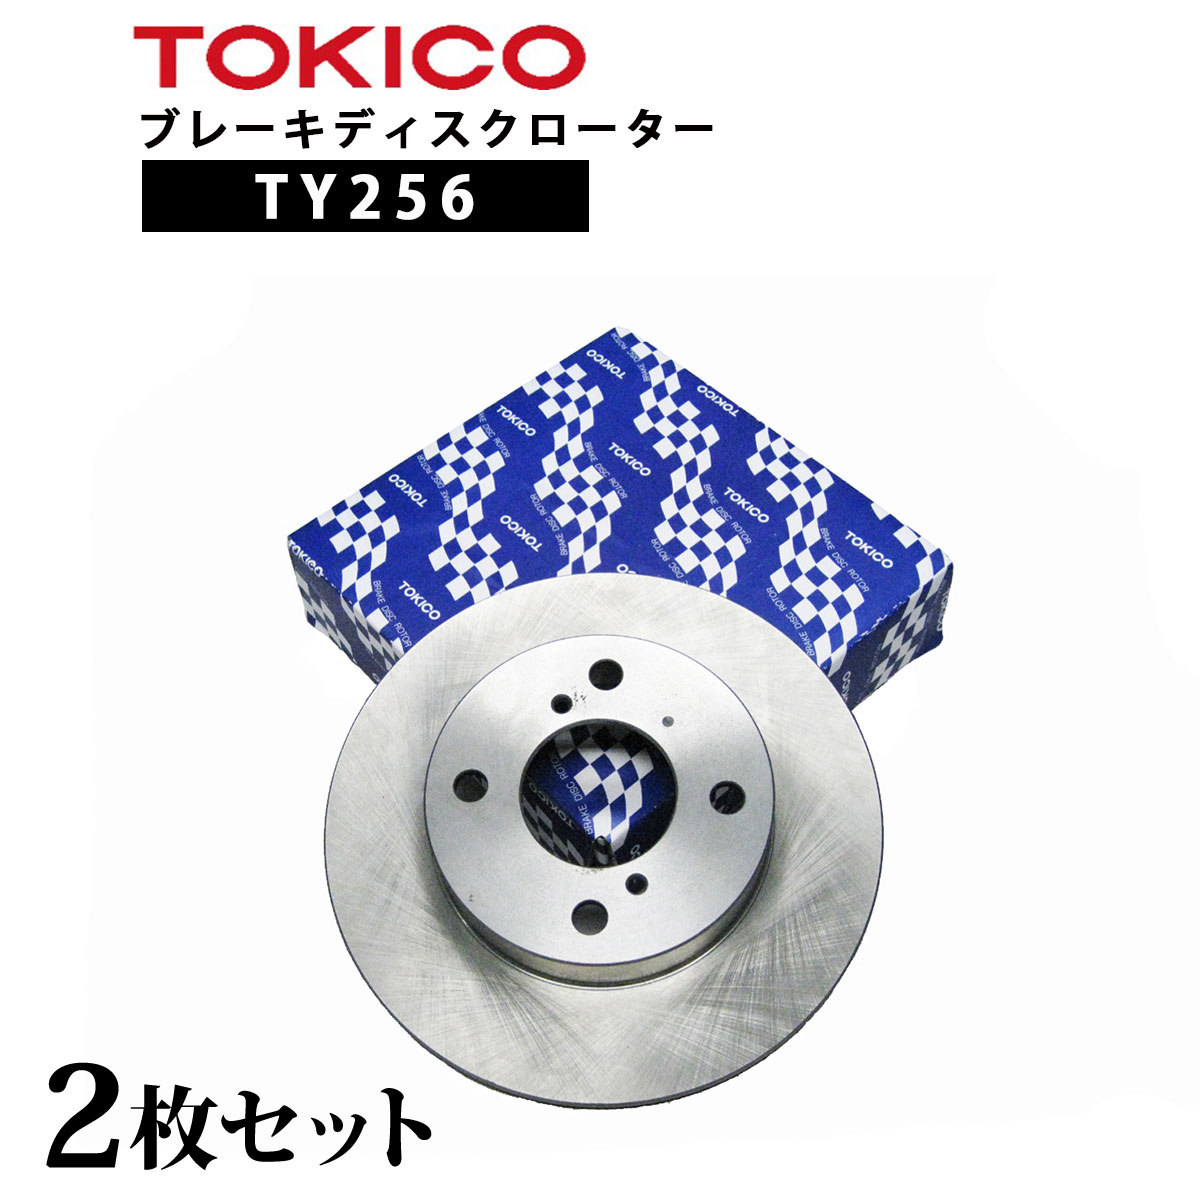 【楽天市場】TY256 TOKICO ブレーキディスクローター フロント 2